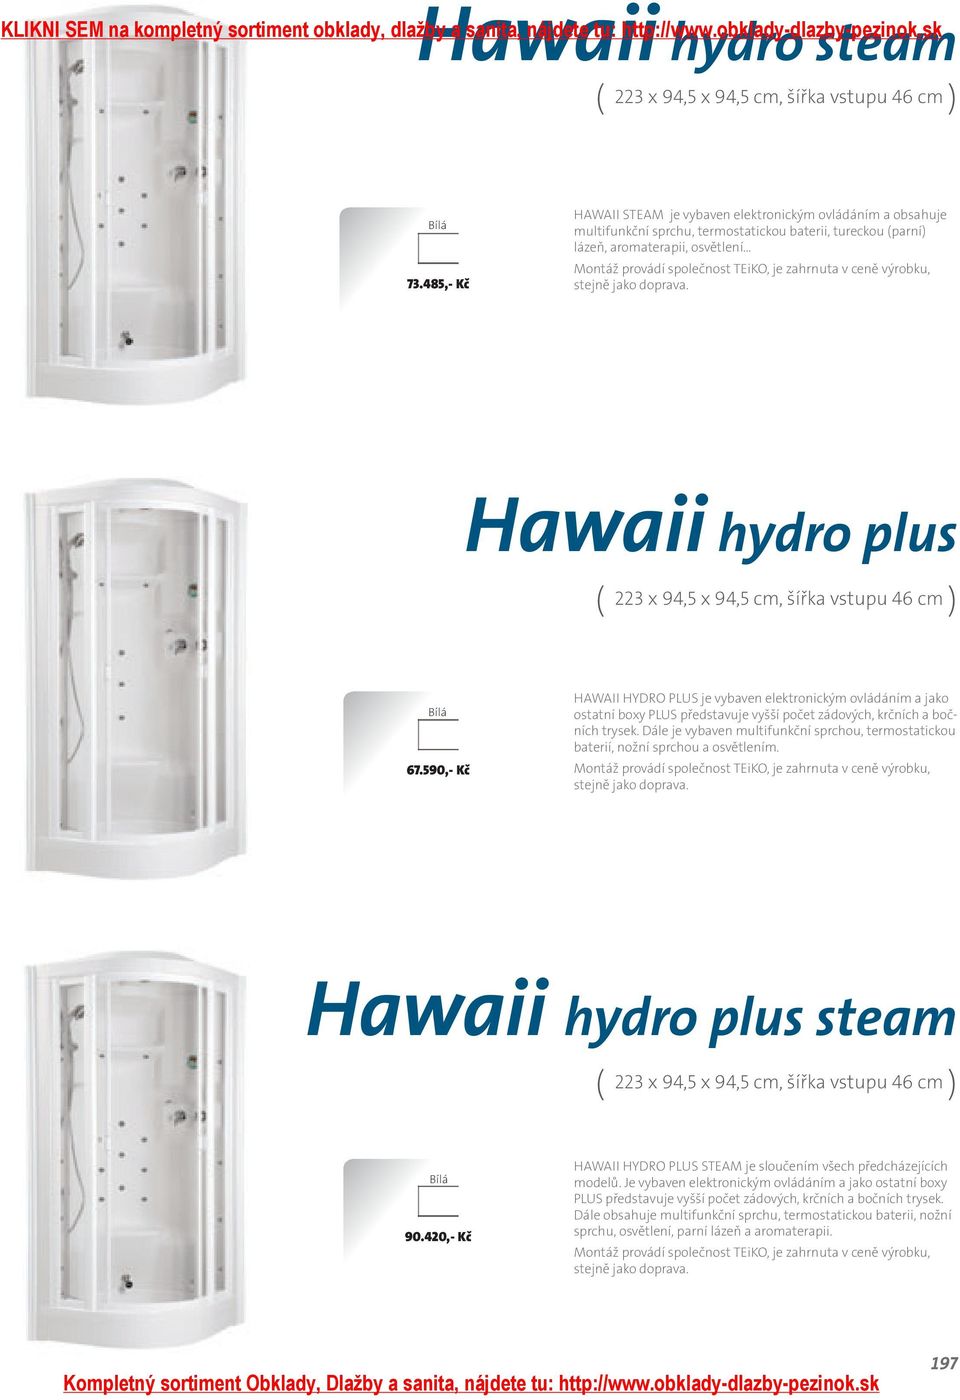 zahrnuta v ceně výrobku, stejně jako doprava. Hawaii hydro plus ( x, x, cm, šířka vstupu cm ).